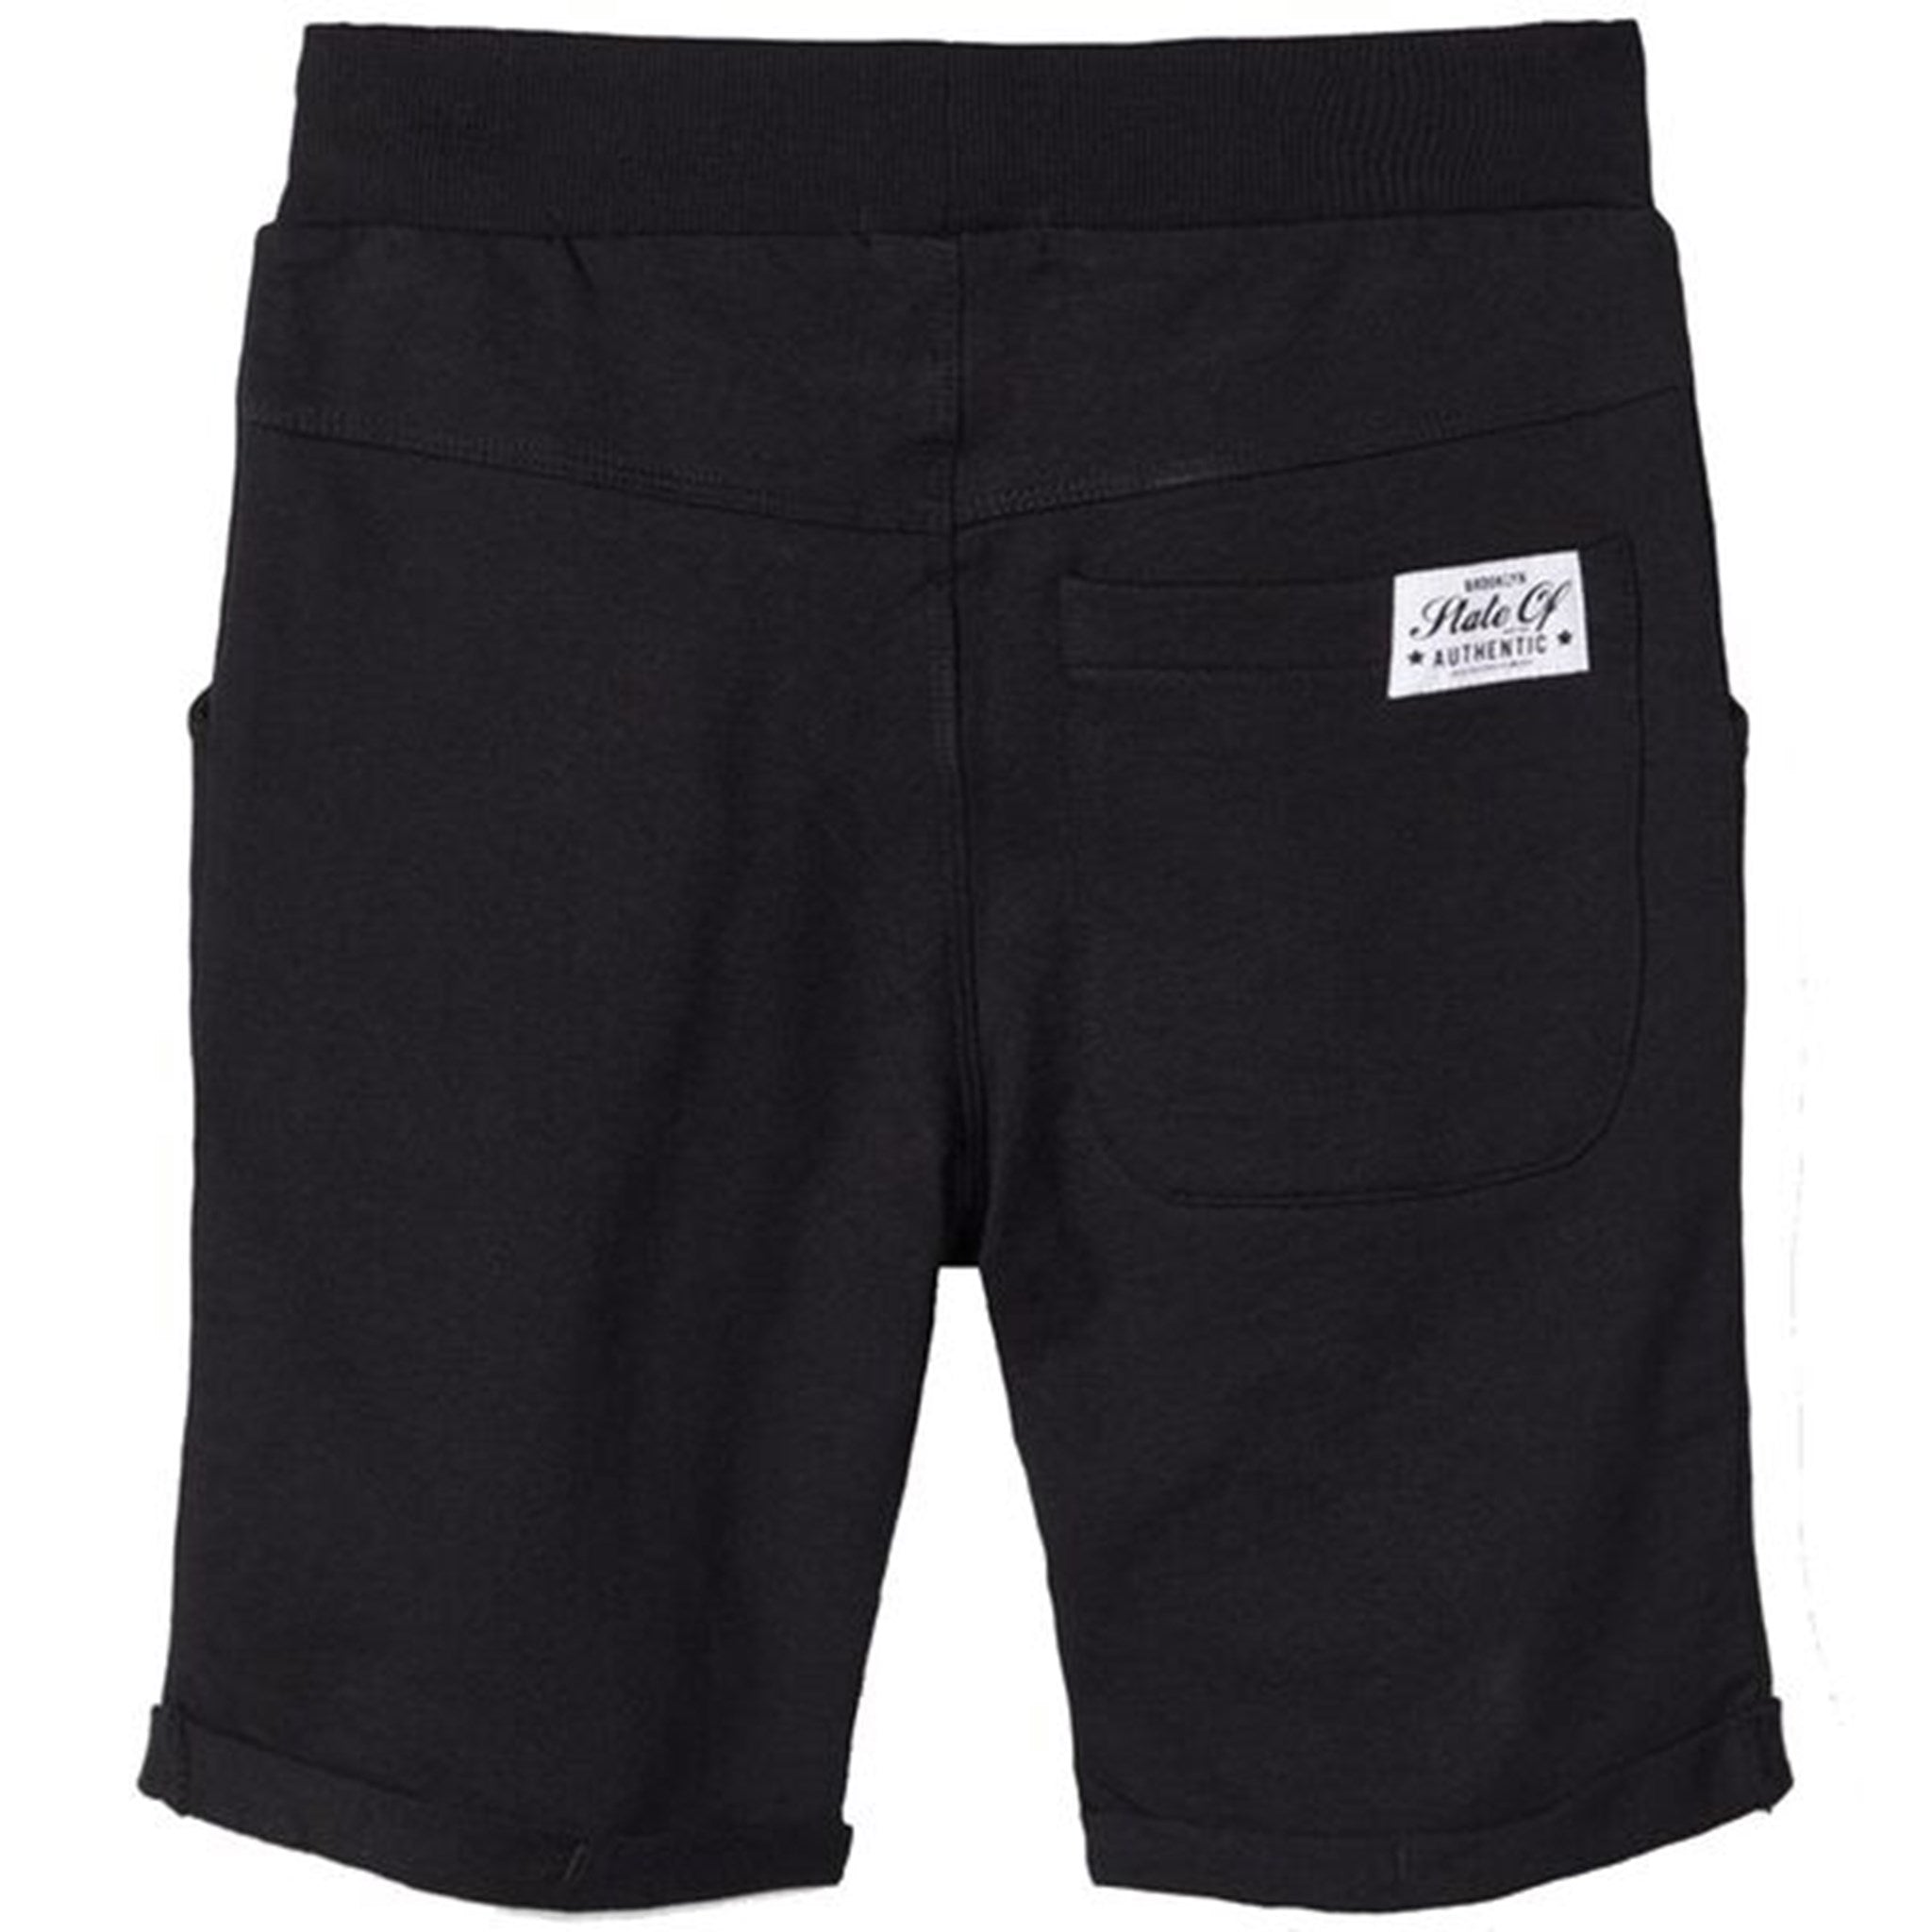 Name it Black Vermo Lange Sweat Shorts Noos 2